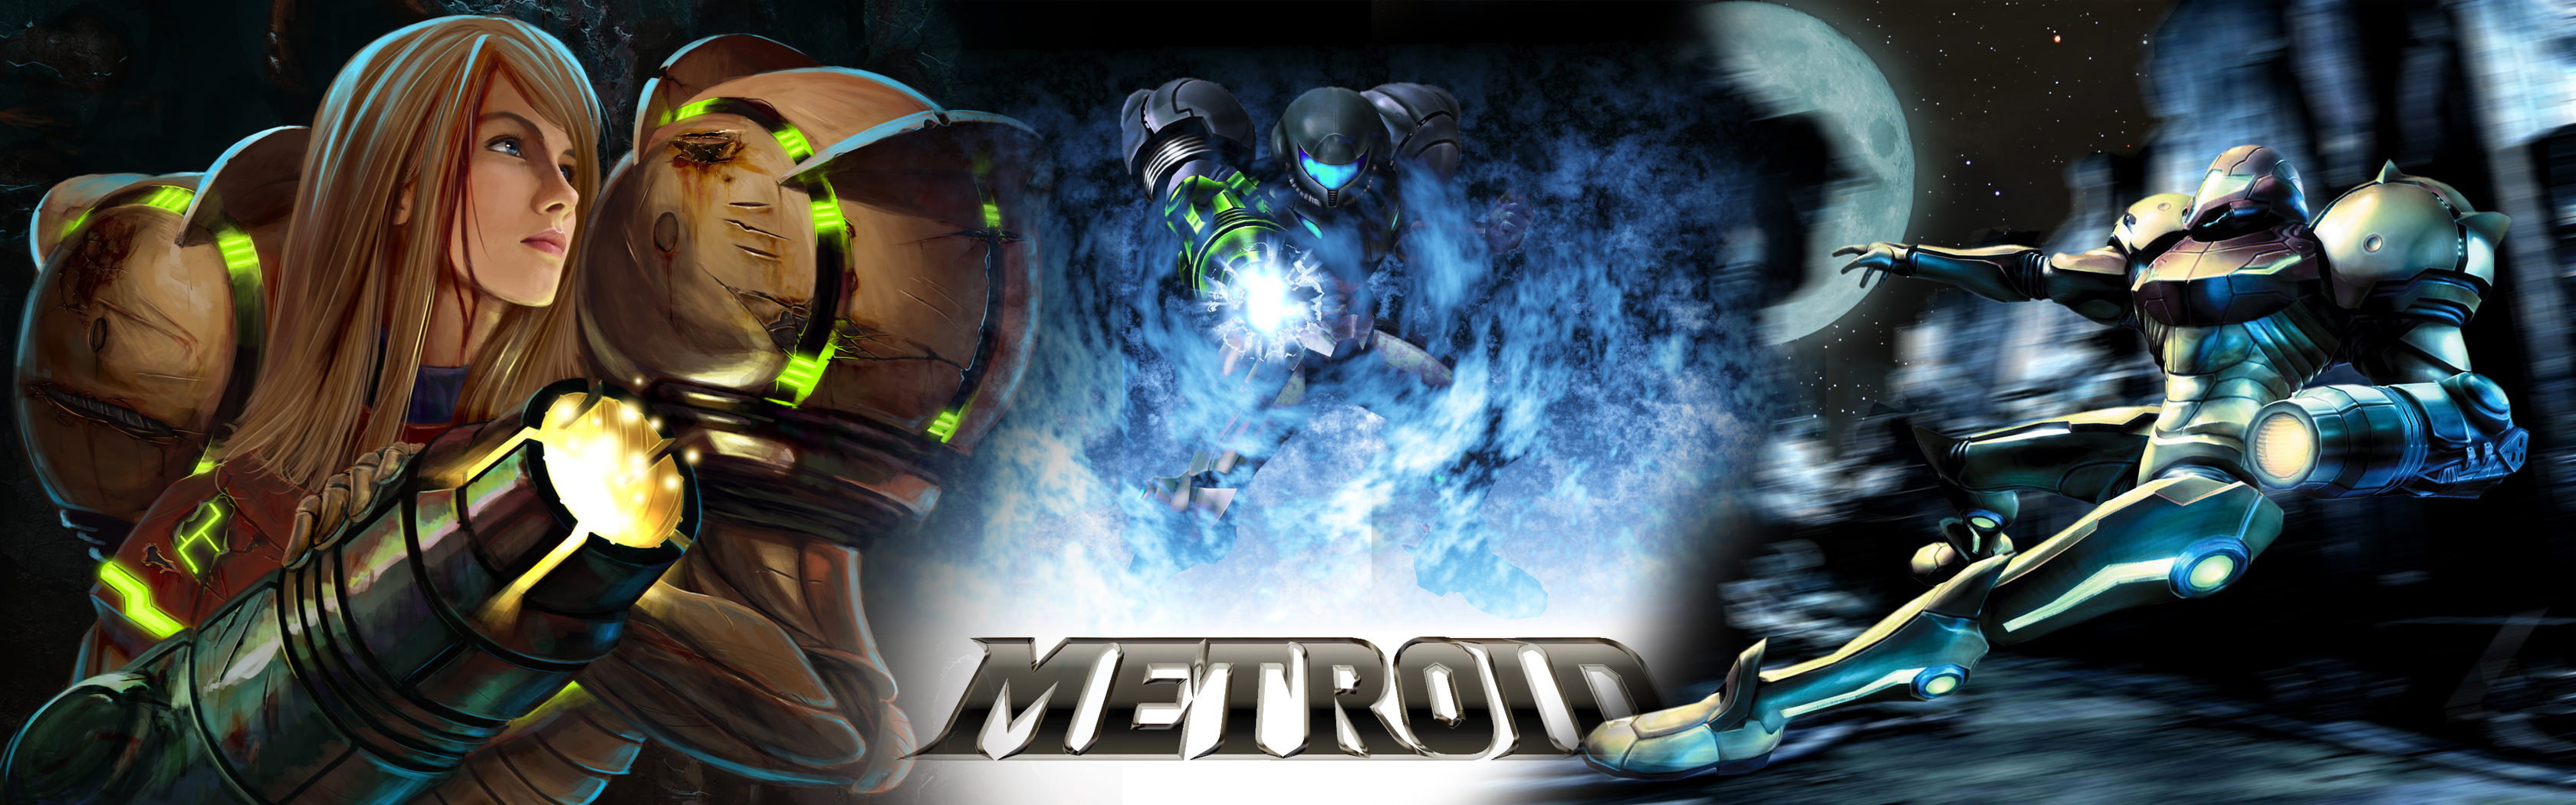 Video Game Metroid 3360x1050